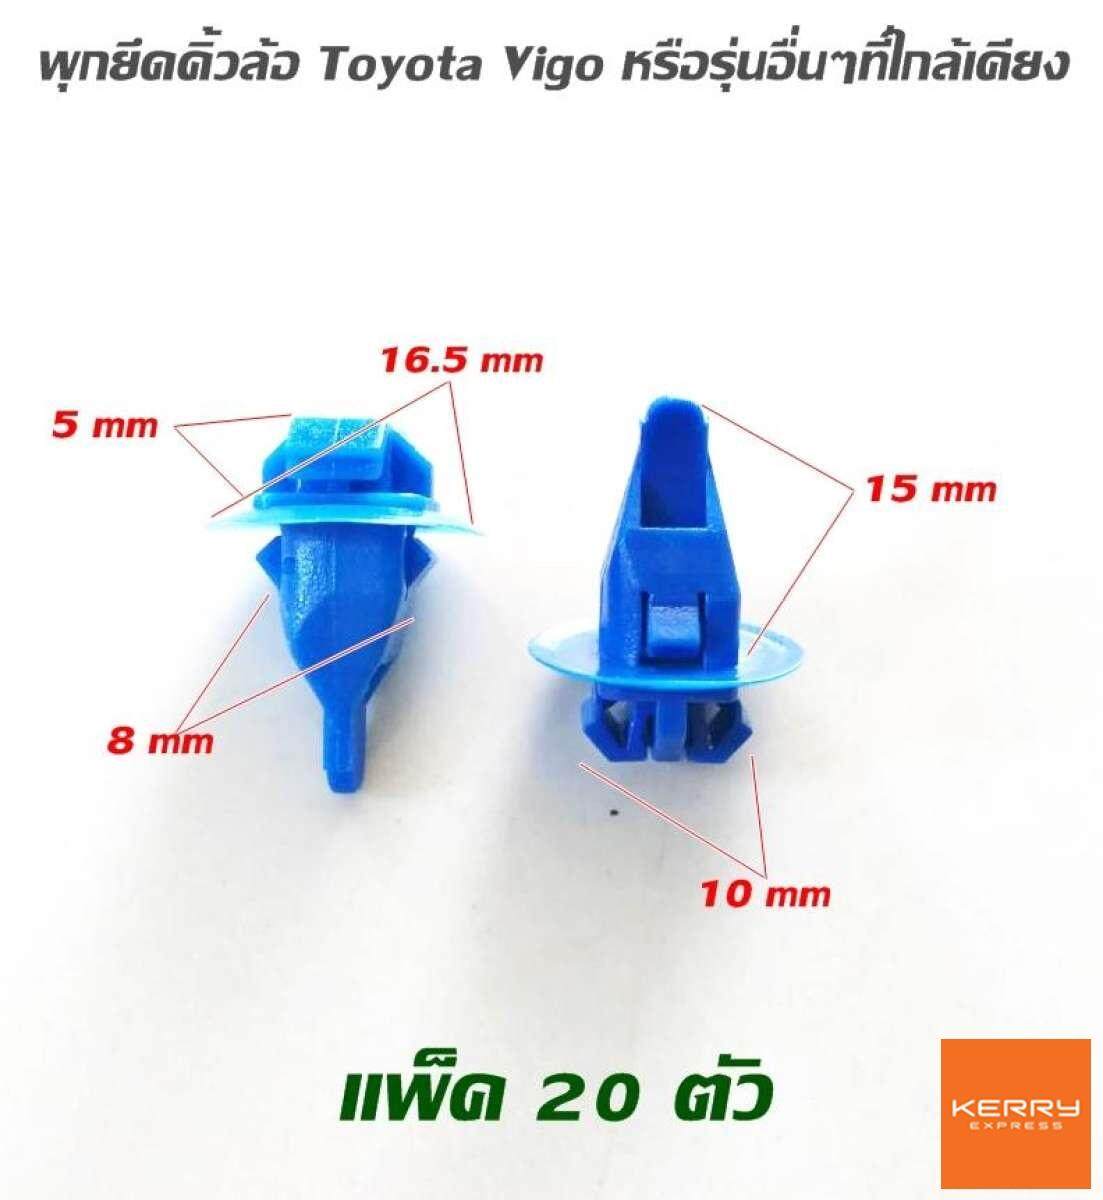 หมุดยึด clip พุกคิ้วล้อ รถยนต์ แพ็ค 20 ตัว พลาสติกภายในรถยนต์ ใช้ได้กับรถยนต์หลายรุ่น Toyota Isuzu Nissan